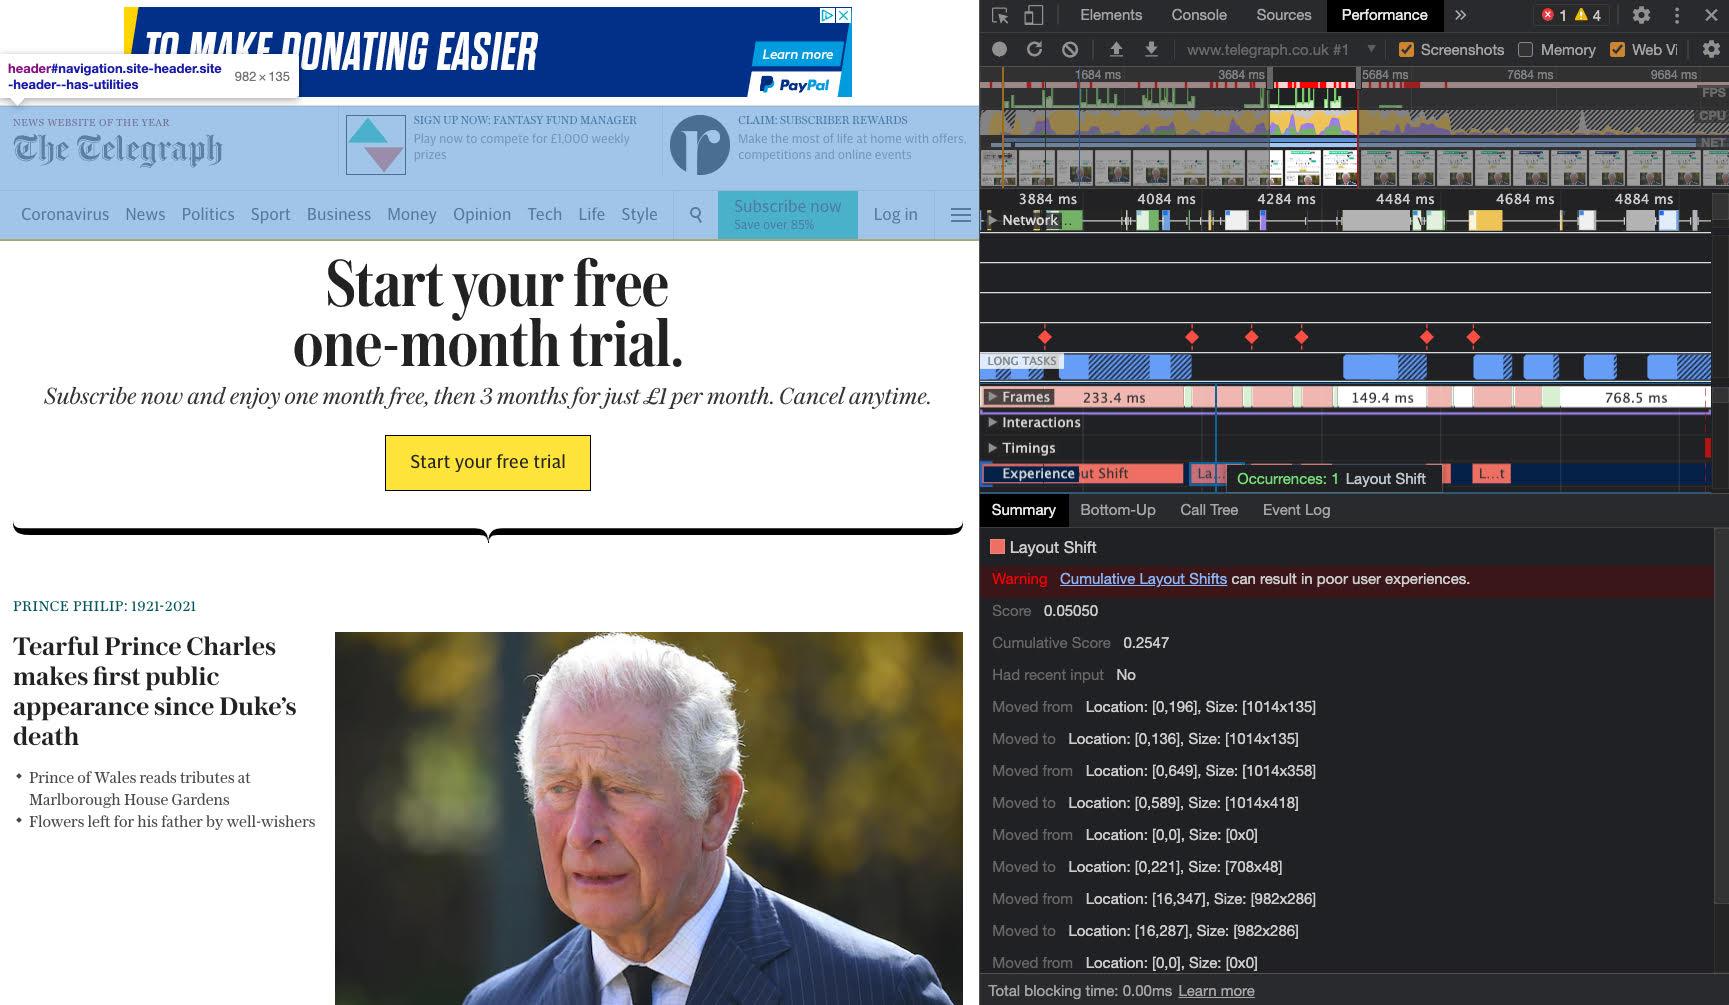 Trang chủ của Telegraph với một quảng cáo trong tiêu đề được làm nổi bật với lớp phủ màu xanh dương.